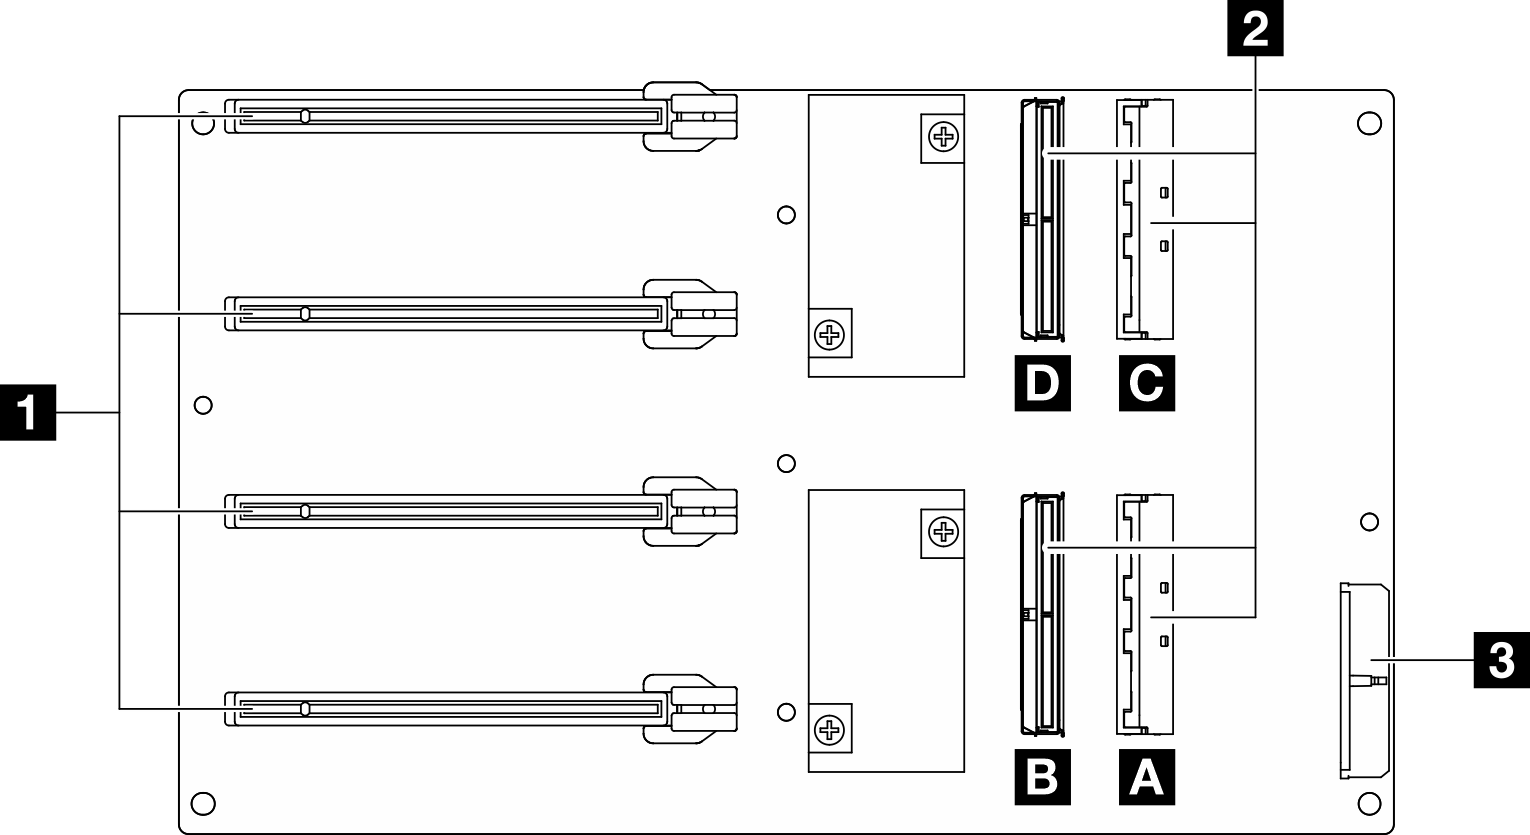 Tableau de distribution GPU direct connectors